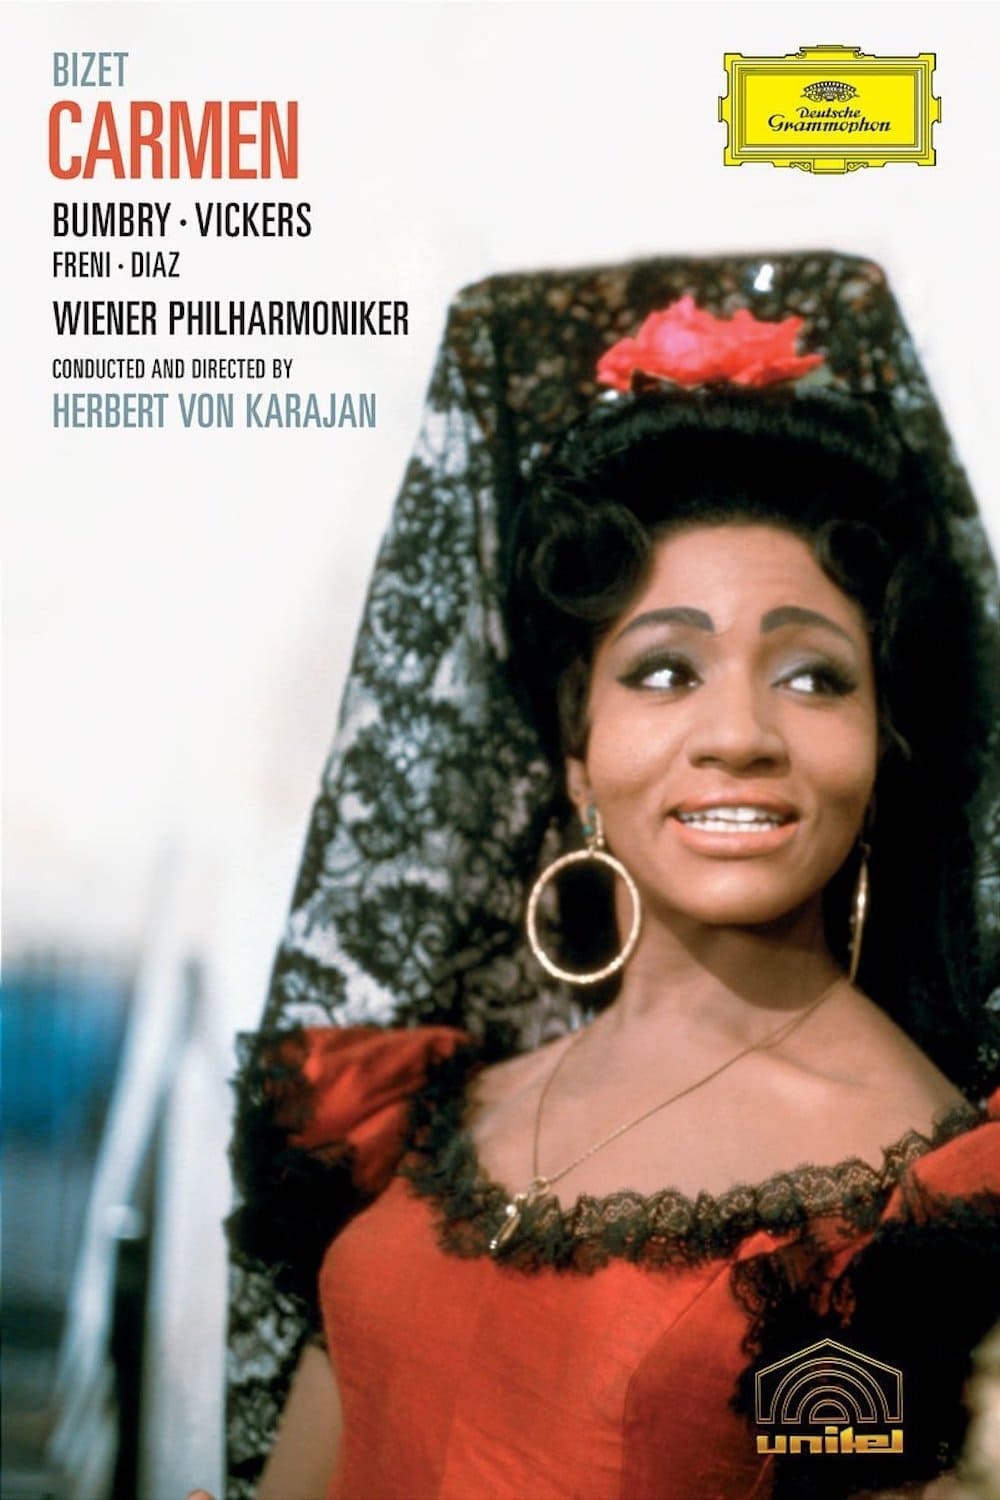 Bizet Carmen (1967)